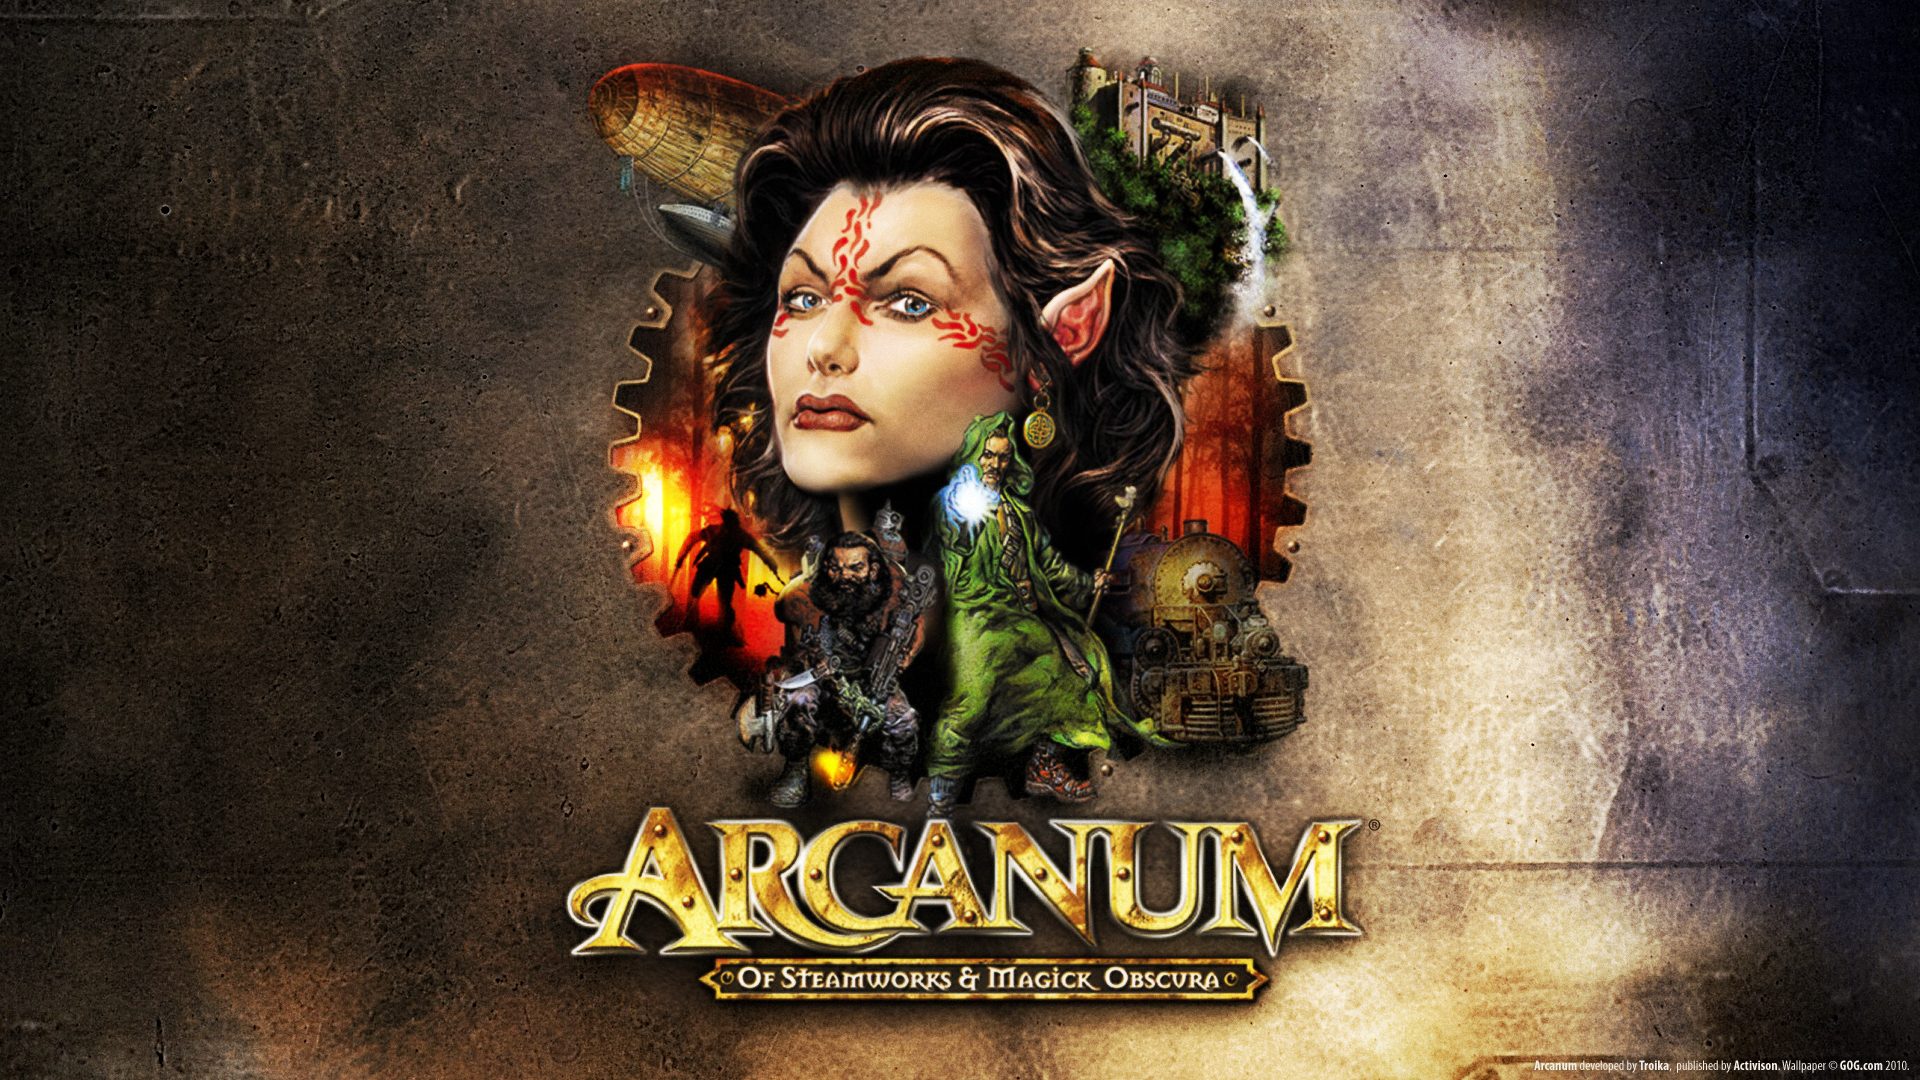 Скачать обои Arcanum: Steamworks И Magick Obscura на телефон бесплатно